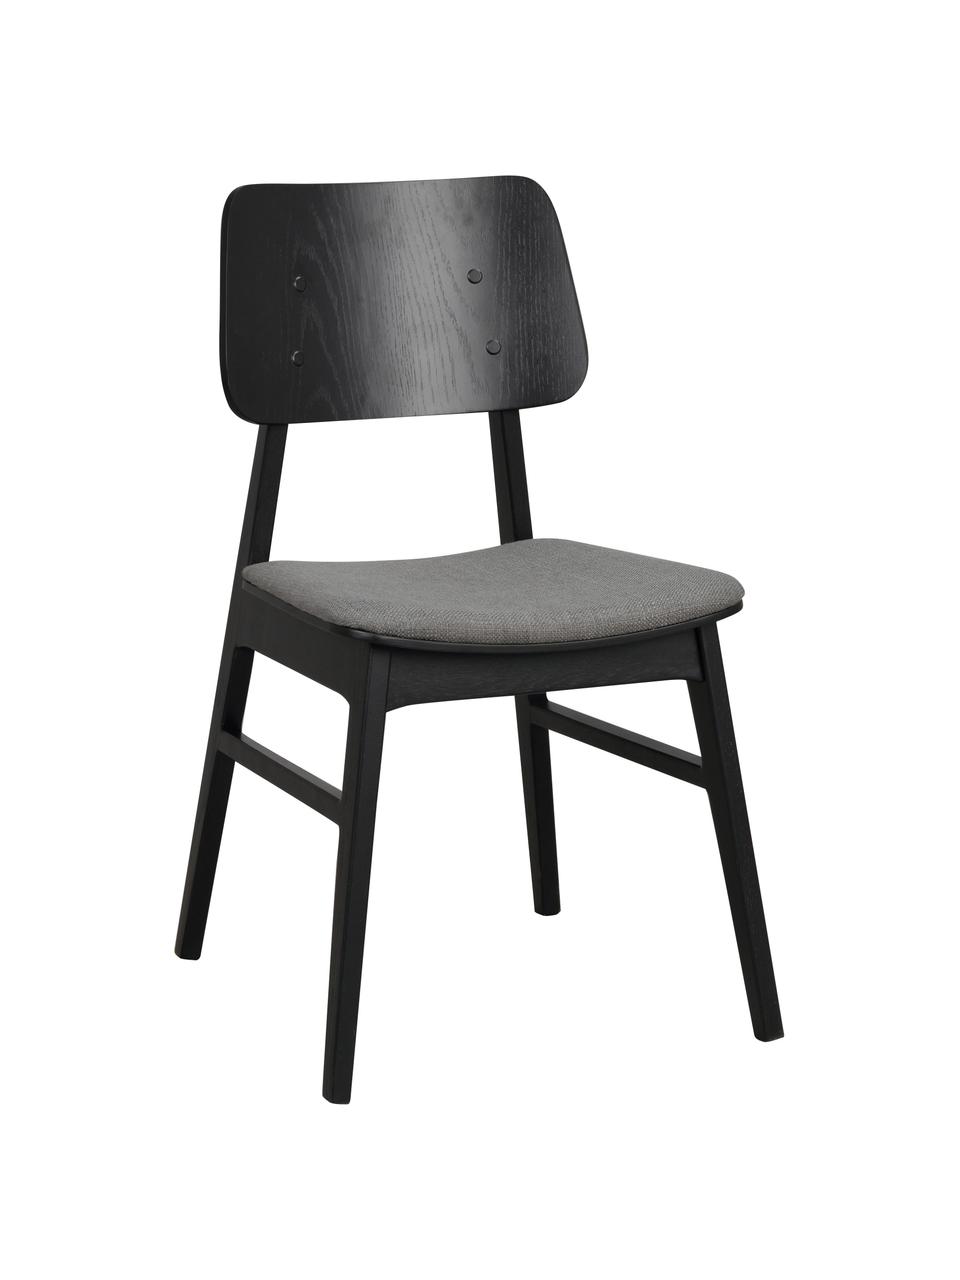 Krzesło z drewna z tapicerowanym siedziskiem Nagano, 2 szt., Tapicerka: 100% poliester Dzięki tka, Ciemnoszara tkanina, drewno dębowe lakierowane na czarno, S 50 x G 51 cm